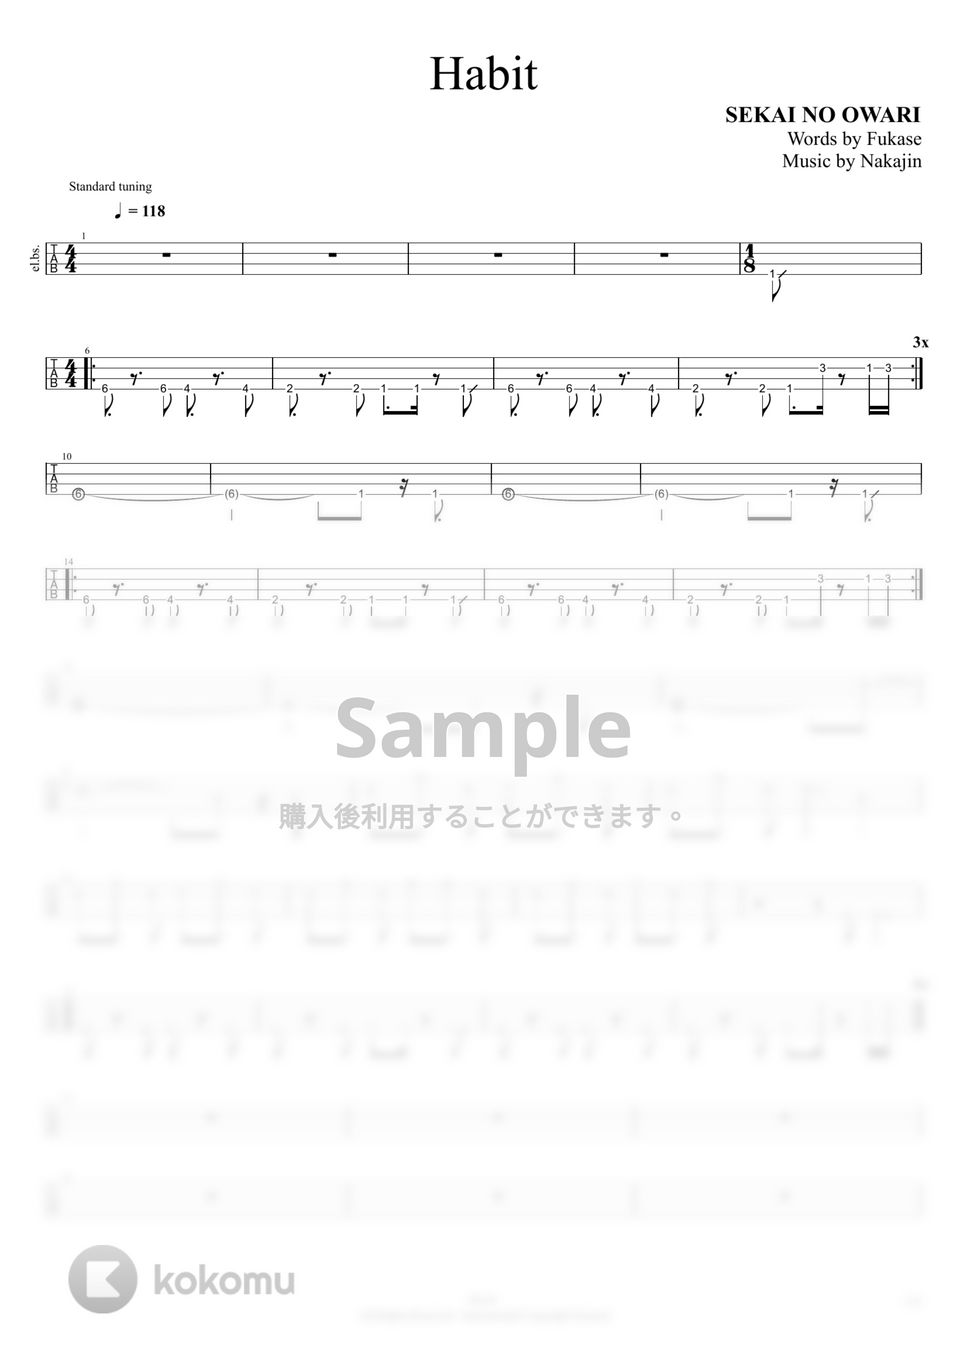 SEKAI NO OWARI - Habit (4弦ベースのTAB譜です。) by RiAN